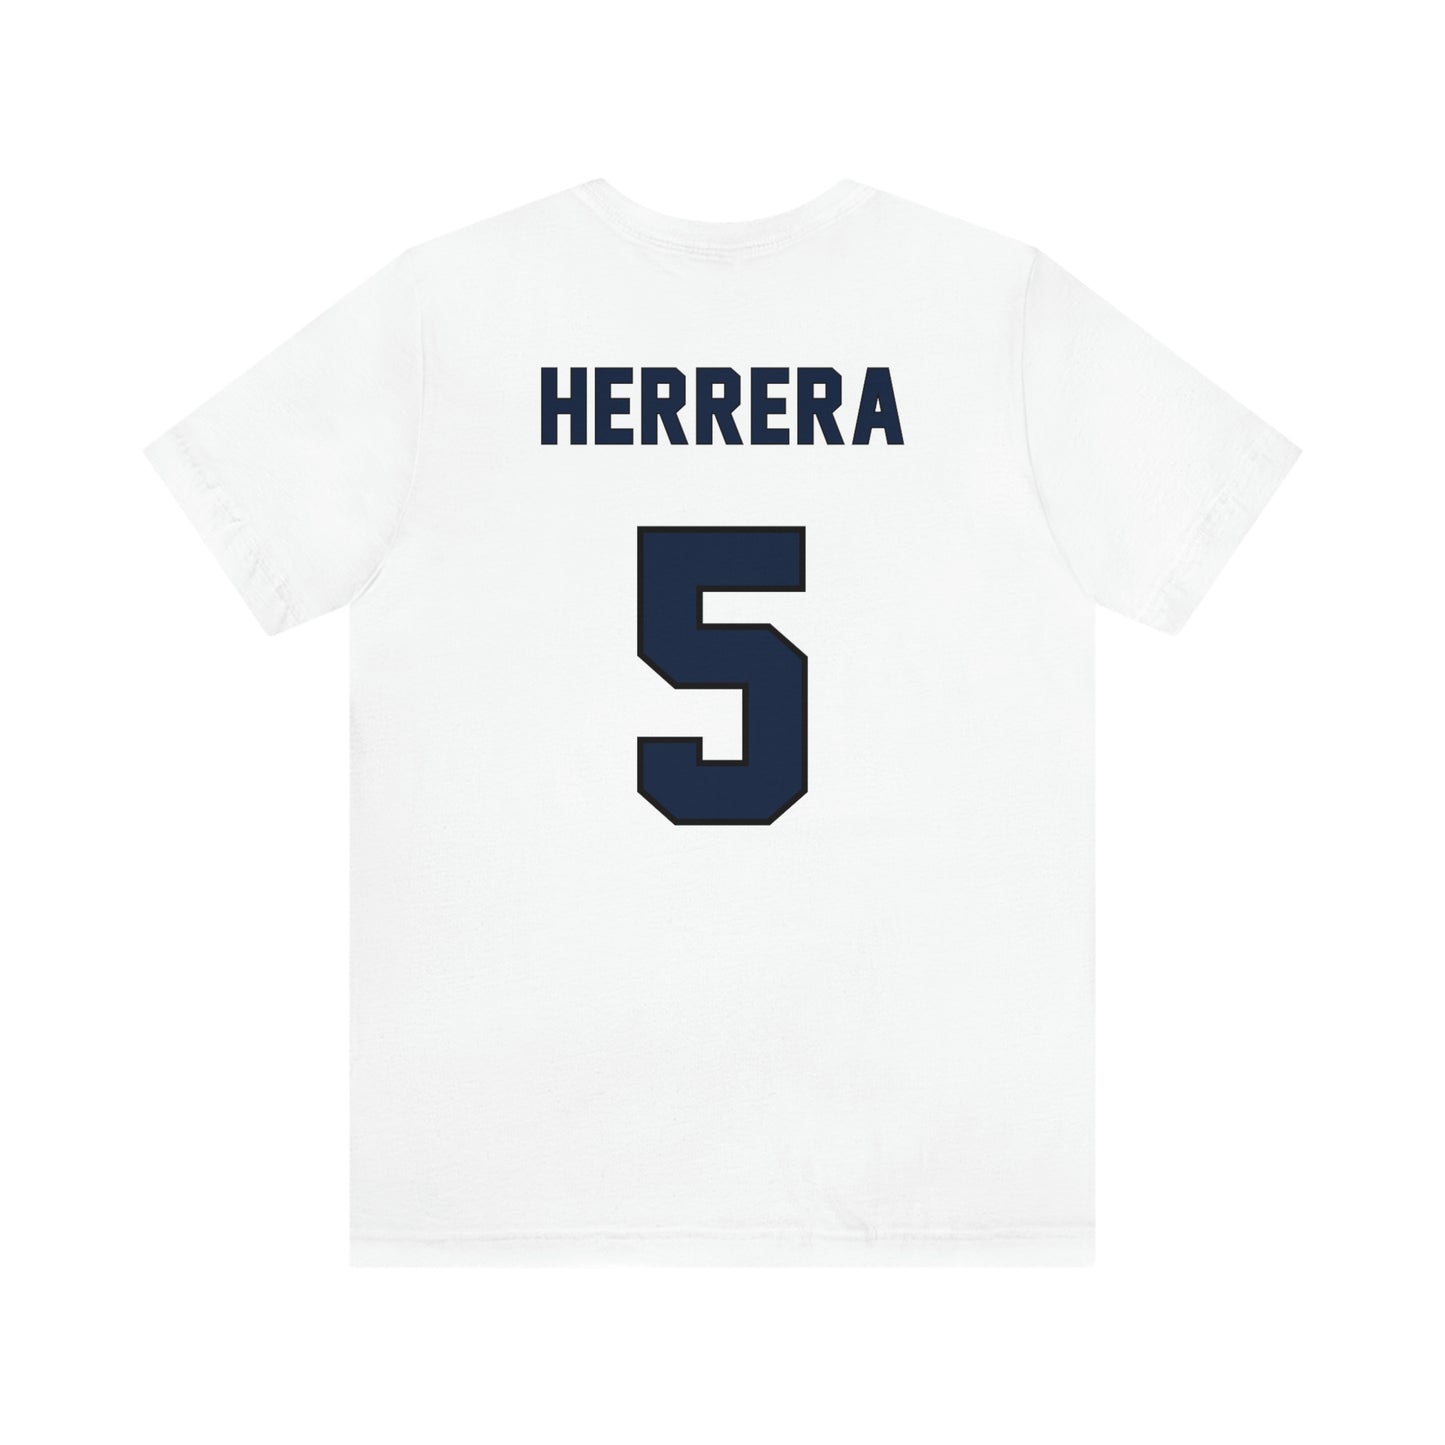 Gabby Herrera Unisex Jersey Shirt